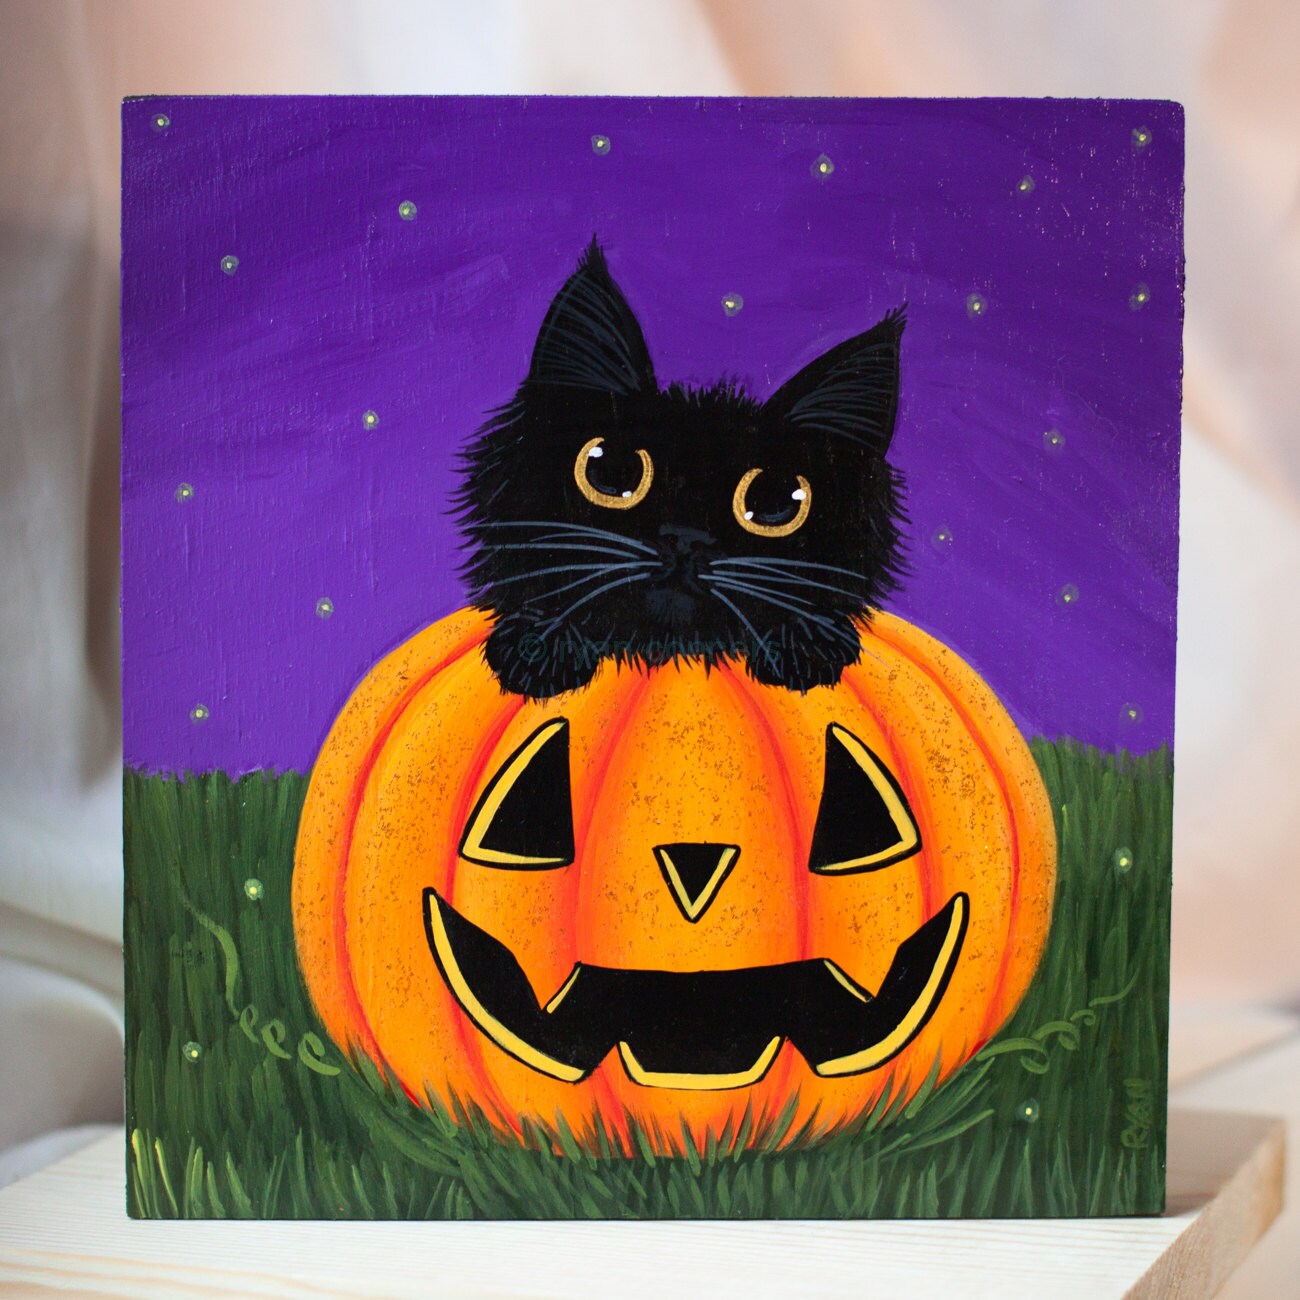 Black Cat in a Pumpkin Original Halloween Folk Art Painting